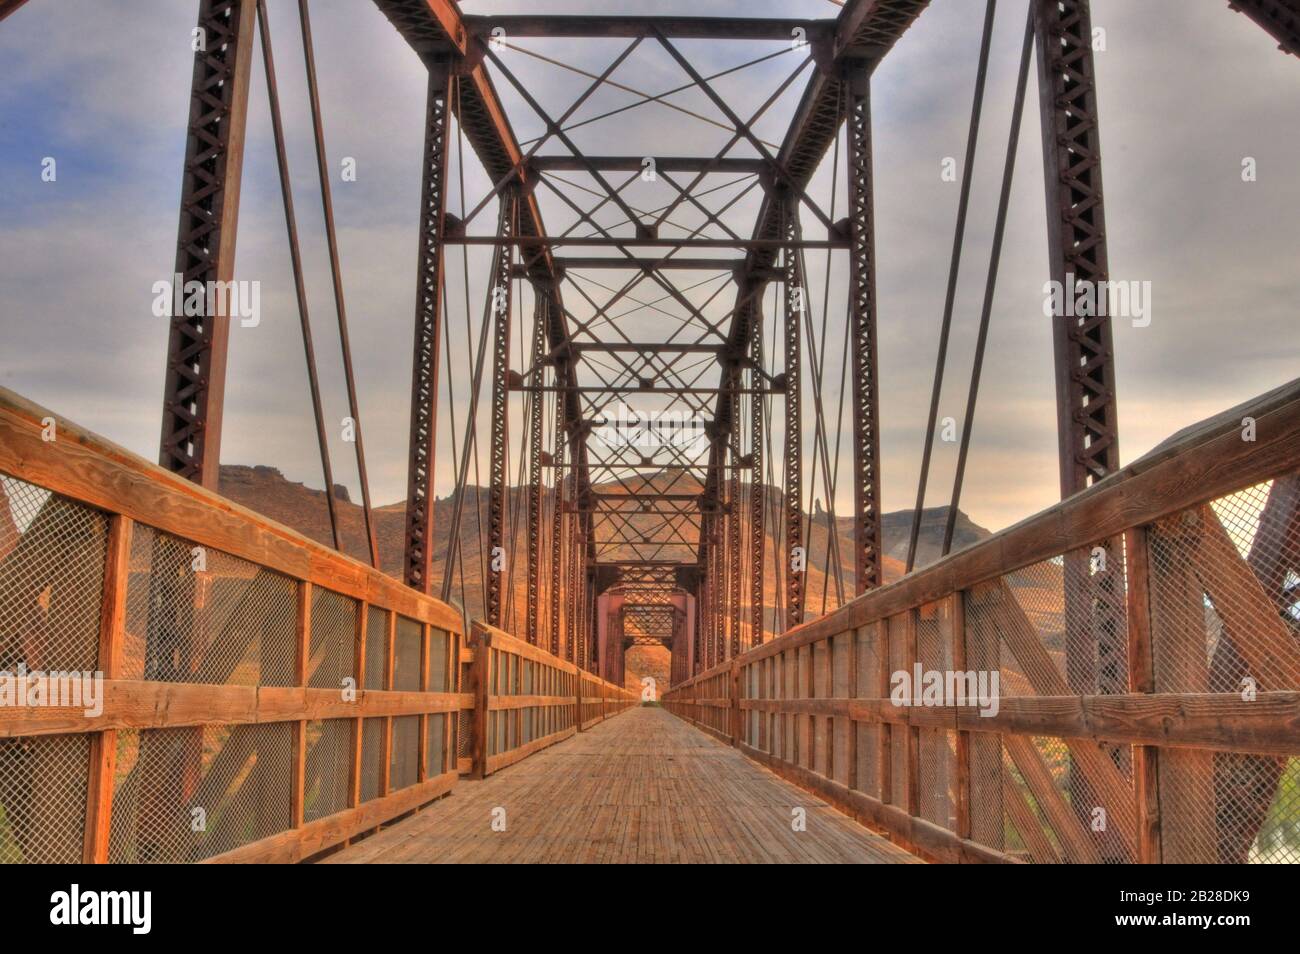 Perspektive Blick auf eine Brücke und ihren Holzdecksteg mit eingezäunten Handläufen aus Holz unter den metallenen Tragwerken in warmer, rostfarbiger Farbe Stockfoto